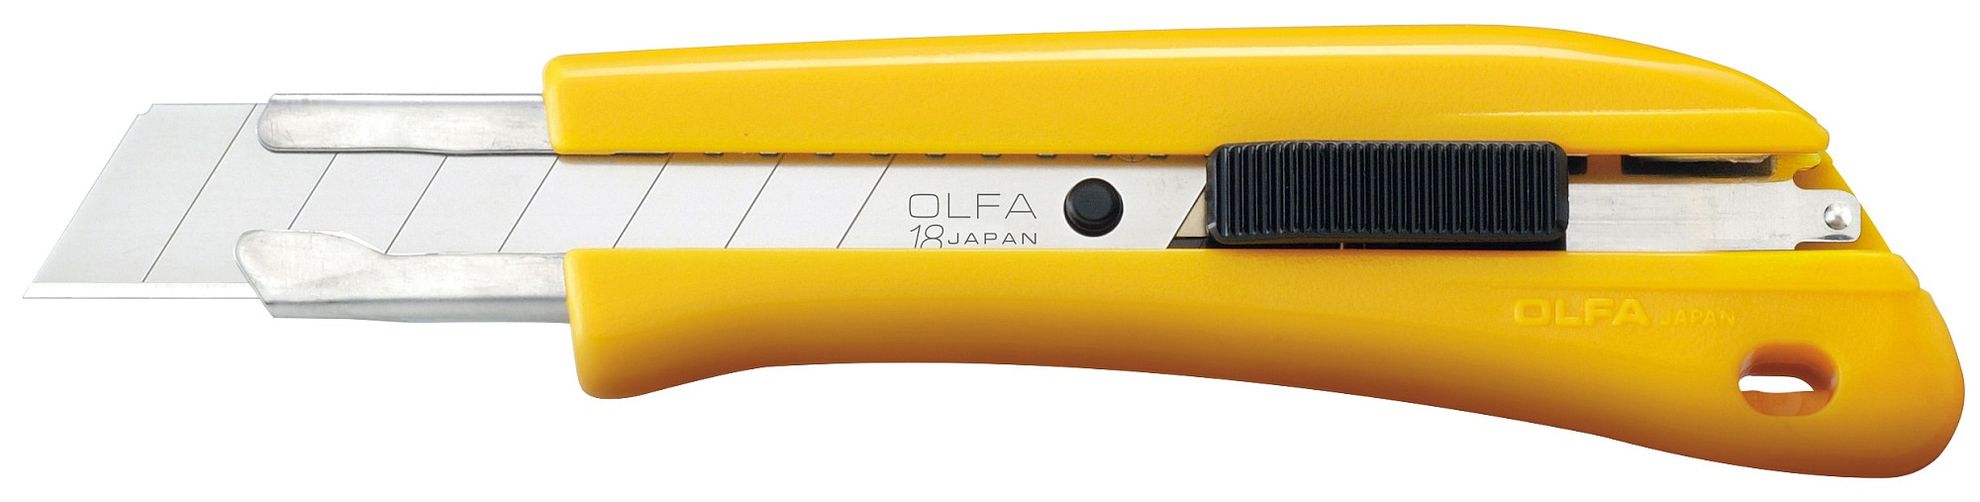 Нож ОЛФА 18 мм. Нож строительный Olfa 18 мм. Нож 18мм, автофиксатор Olfa. Нож Olfa с выдвижным лезвием с автофиксатором 18 мм в комплекте. Лезвия olfa 18